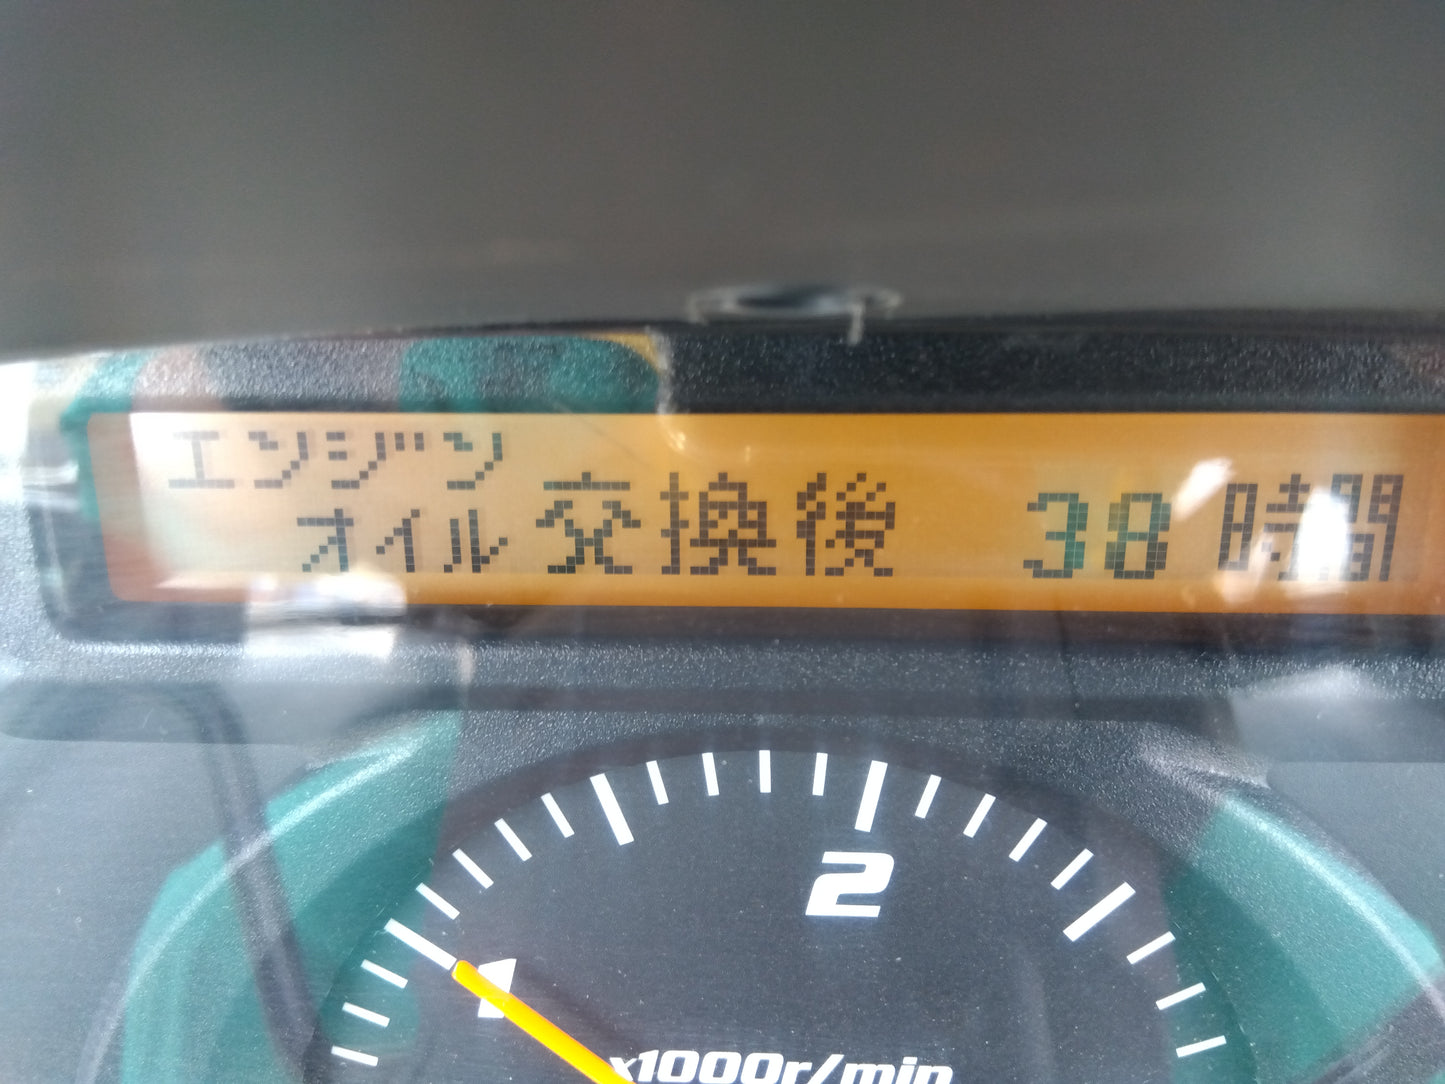 クボタ　中古　トラクター＋ロータリー　KL250